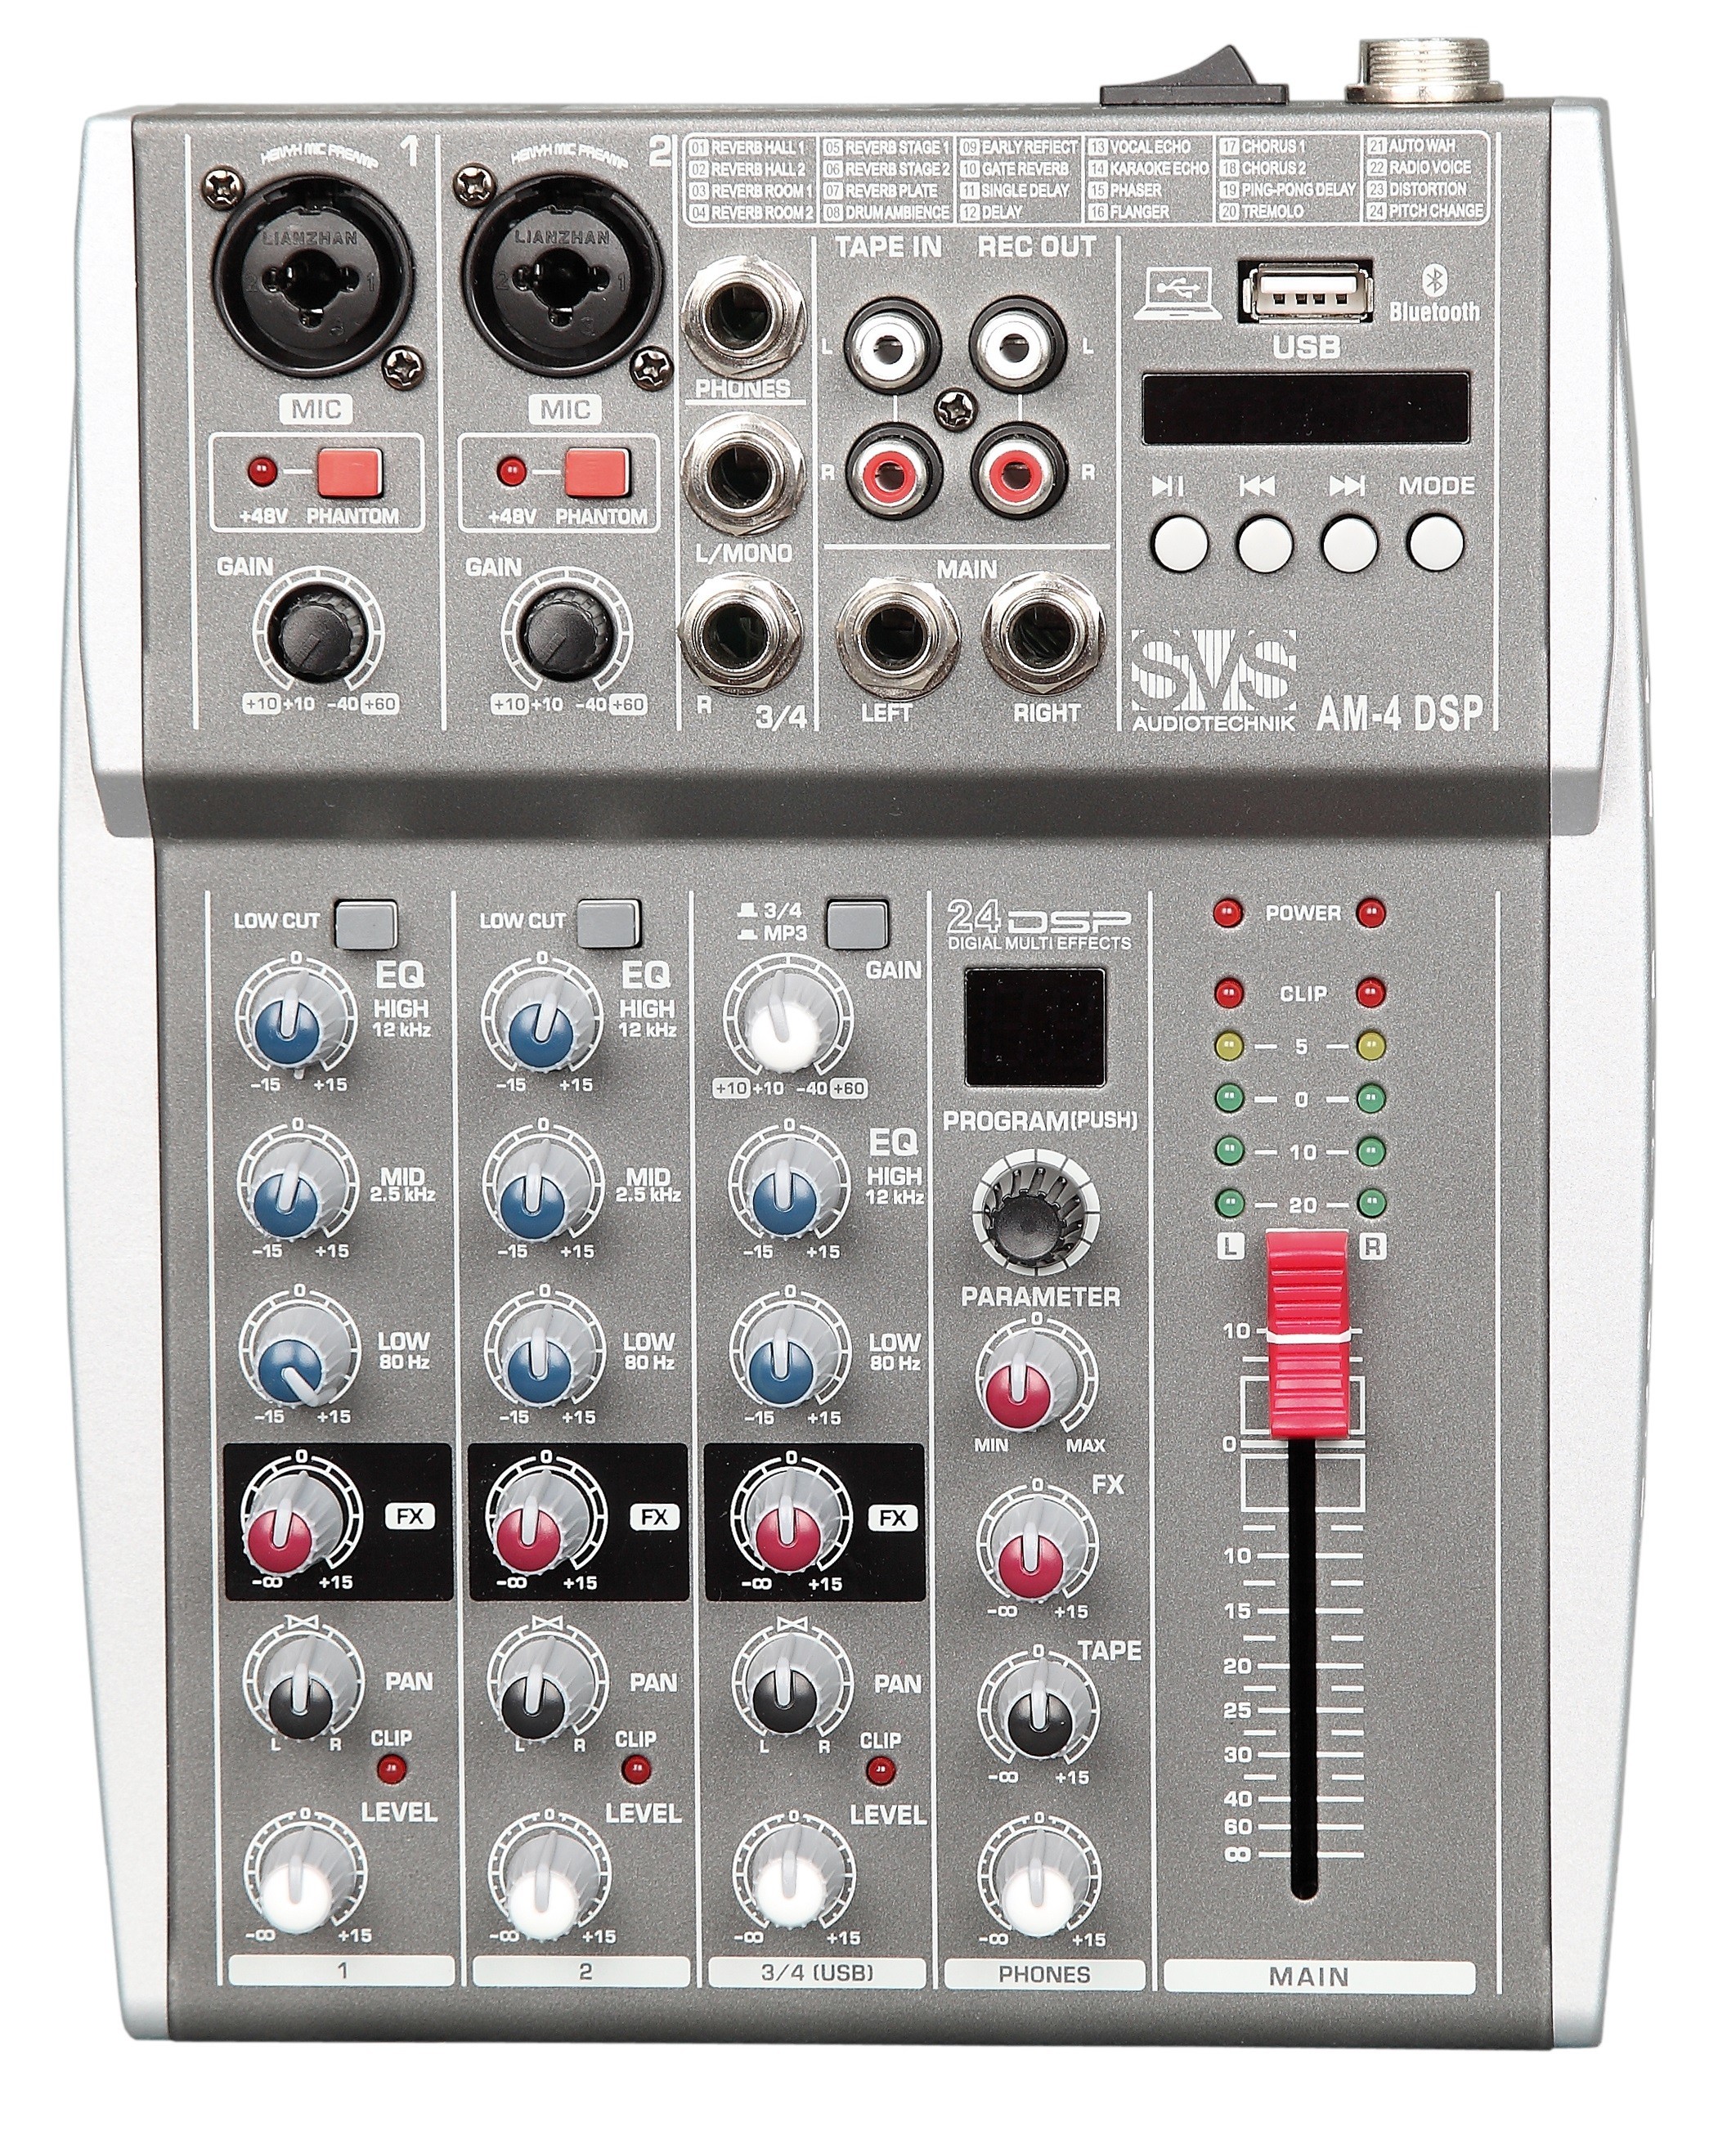 Детальная картинка товара SVS Audiotechnik mixers AM-4 DSP в магазине Музыкальная Тема